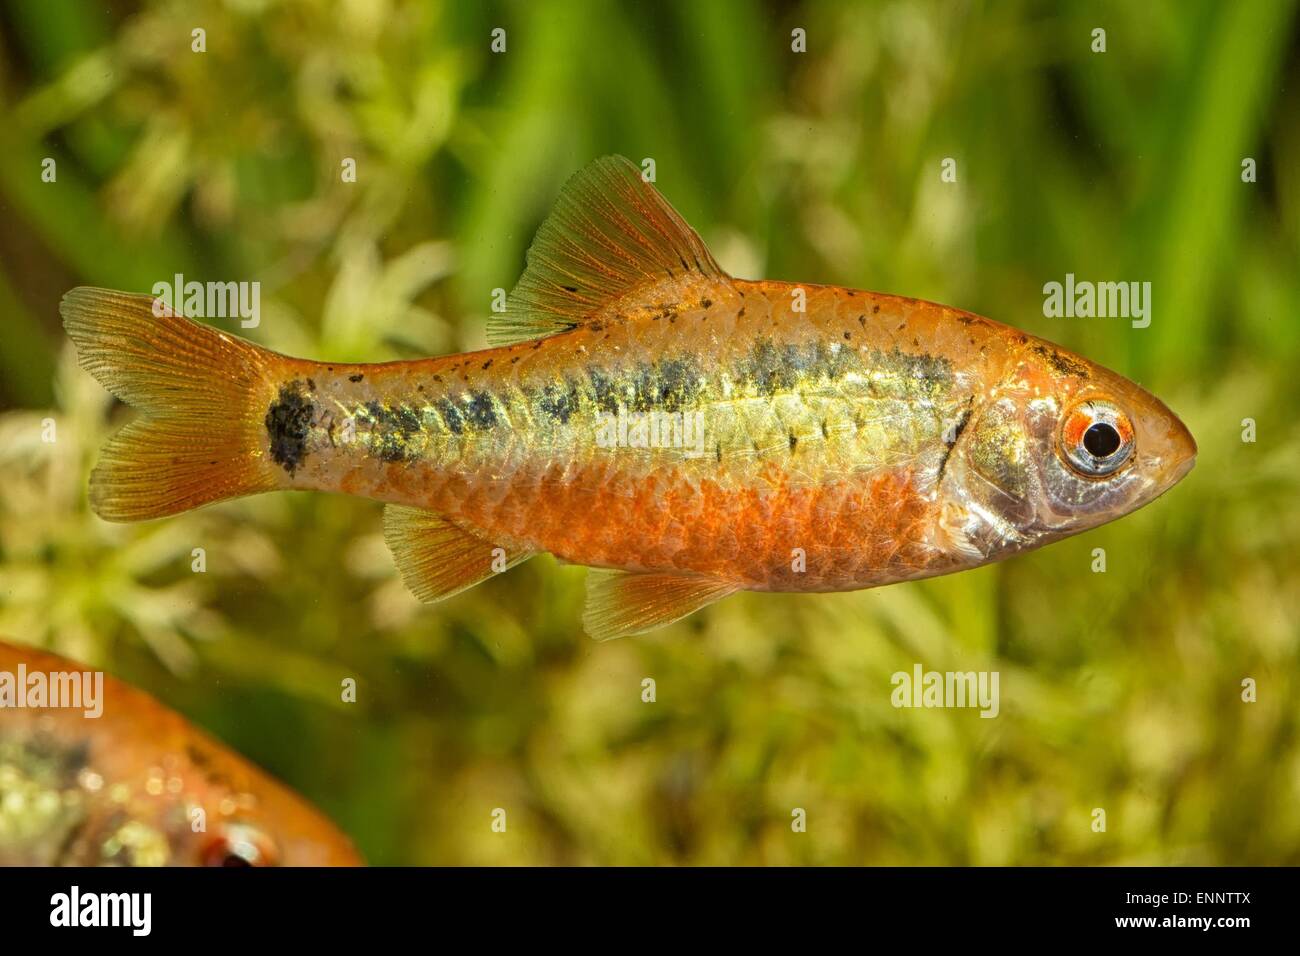 Tropical freshwater aquarium fish from genus Puntius. Stock Photo